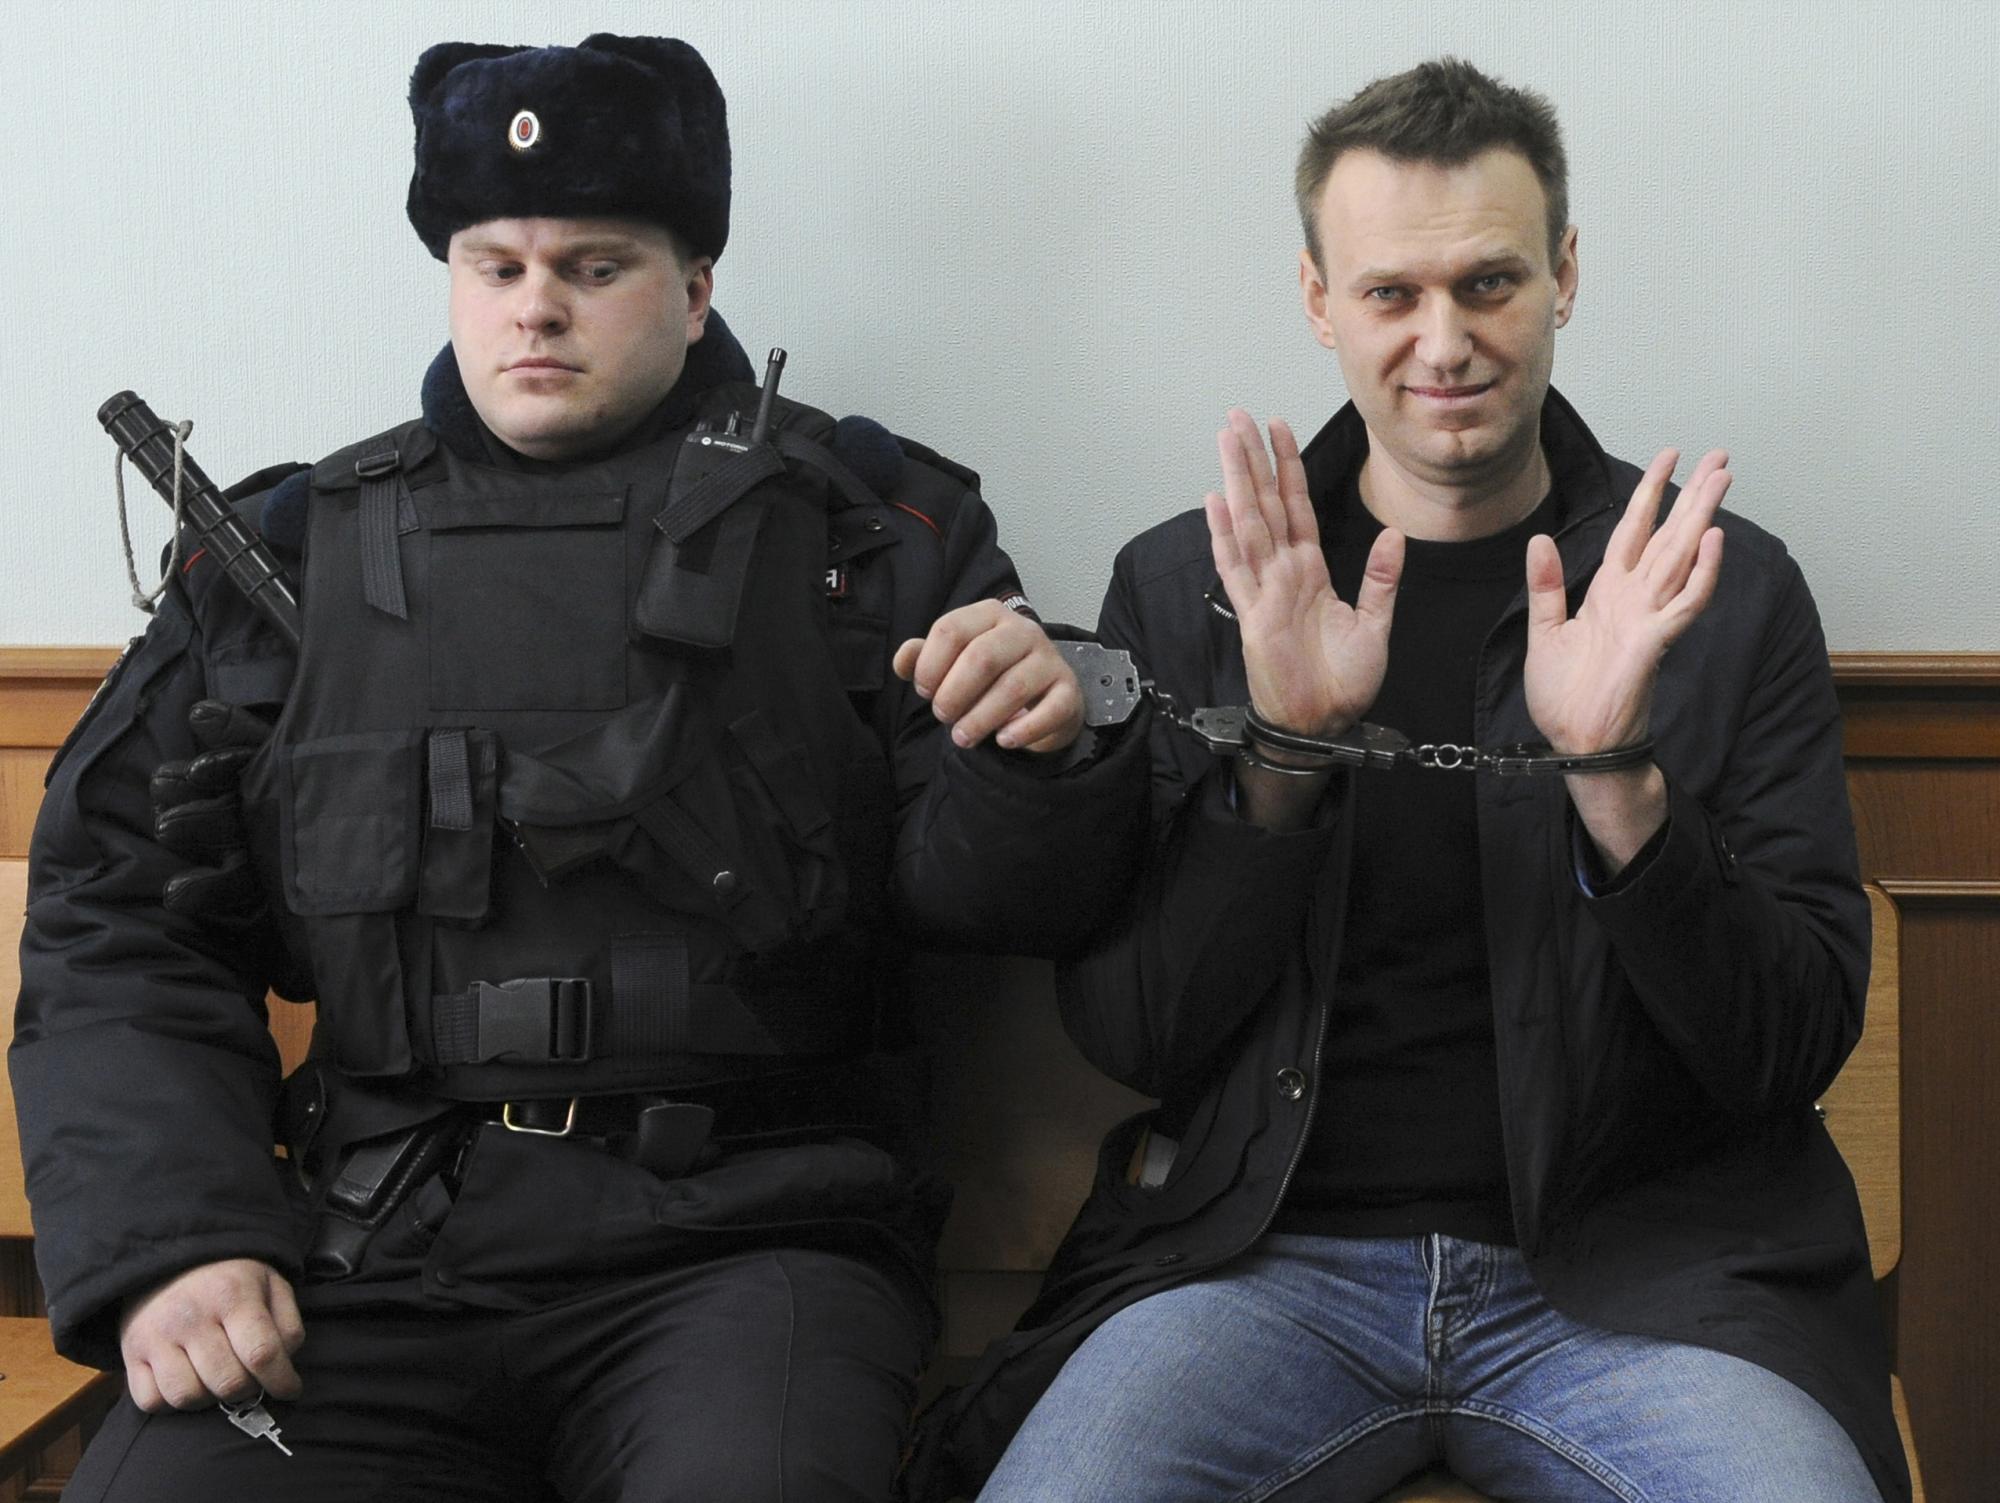 Premio Sájarov 2021 reconoce la oposición de Alexei Navalni al régimen de Putin. Noticias en tiempo real